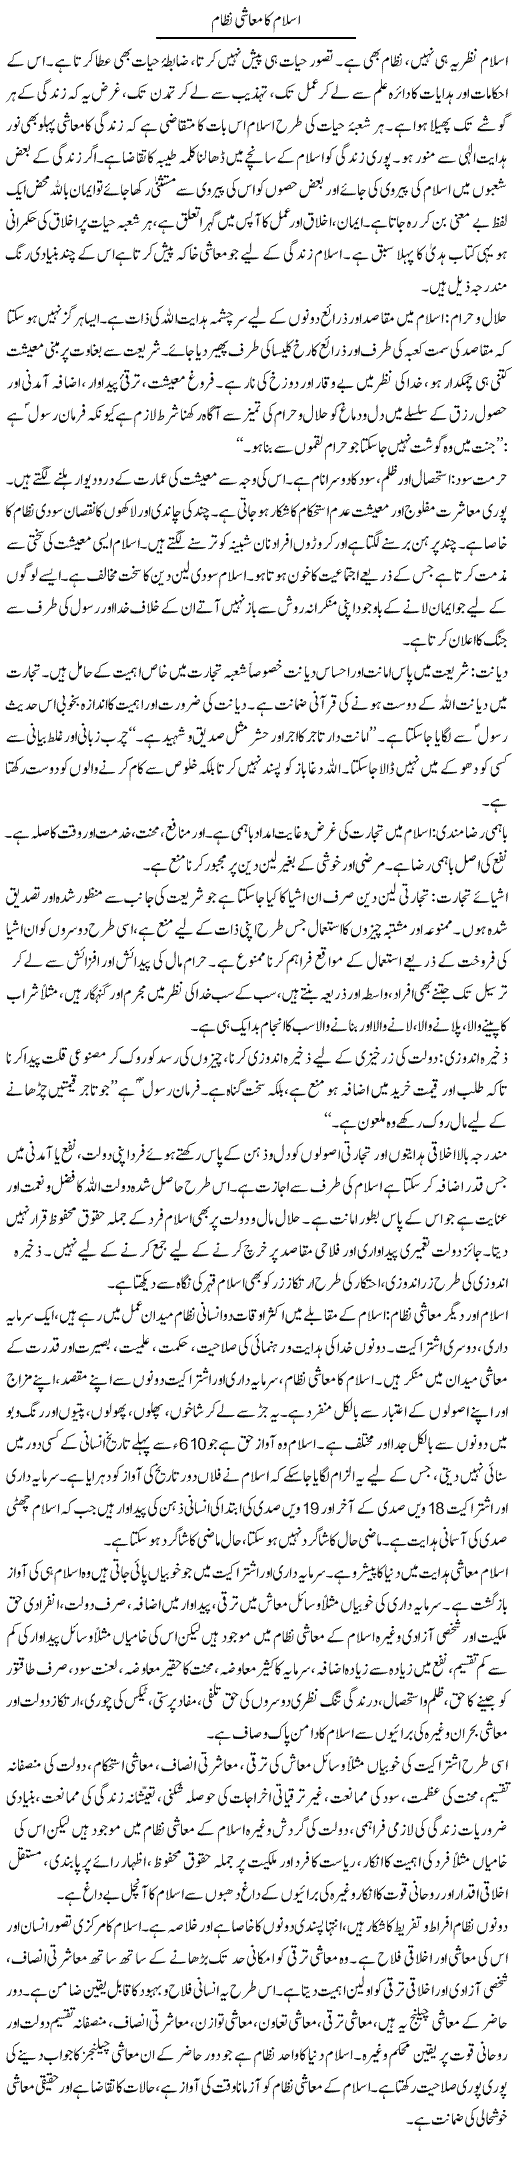 Islam Ka Muashi Nizam | Dr. Muhammad Tayyab Khan Singhanvi | Daily Urdu Columns